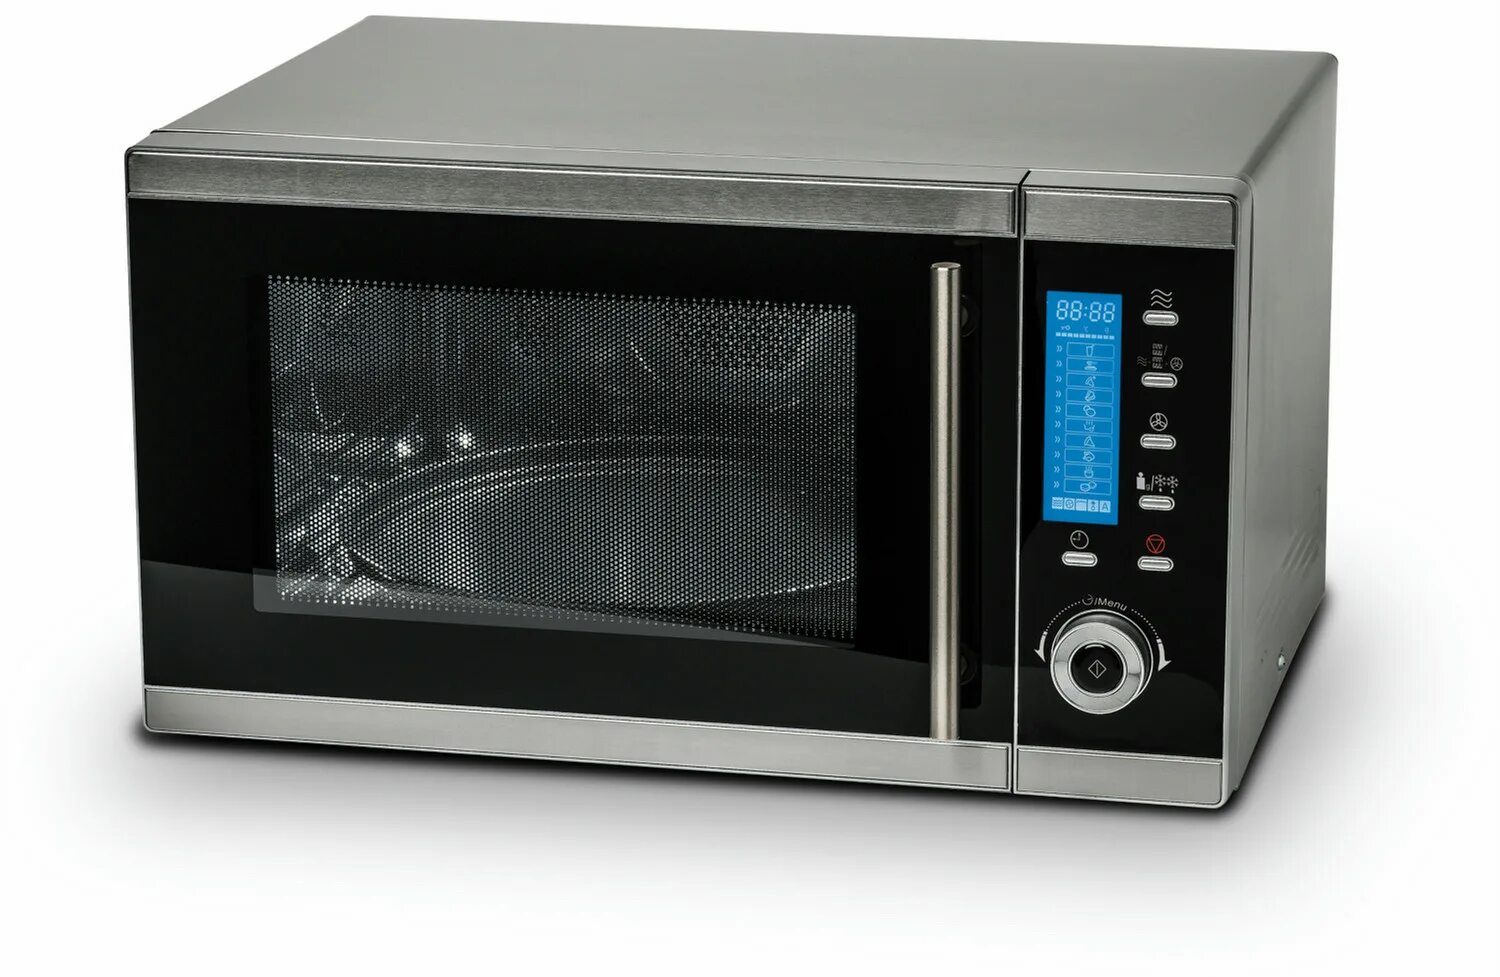 Микроволновая печь Microwave Oven. Saro 900вт СВЧ микроволновка. Микроволновая печь Медион с грилем. Simfer микроволновая печь.